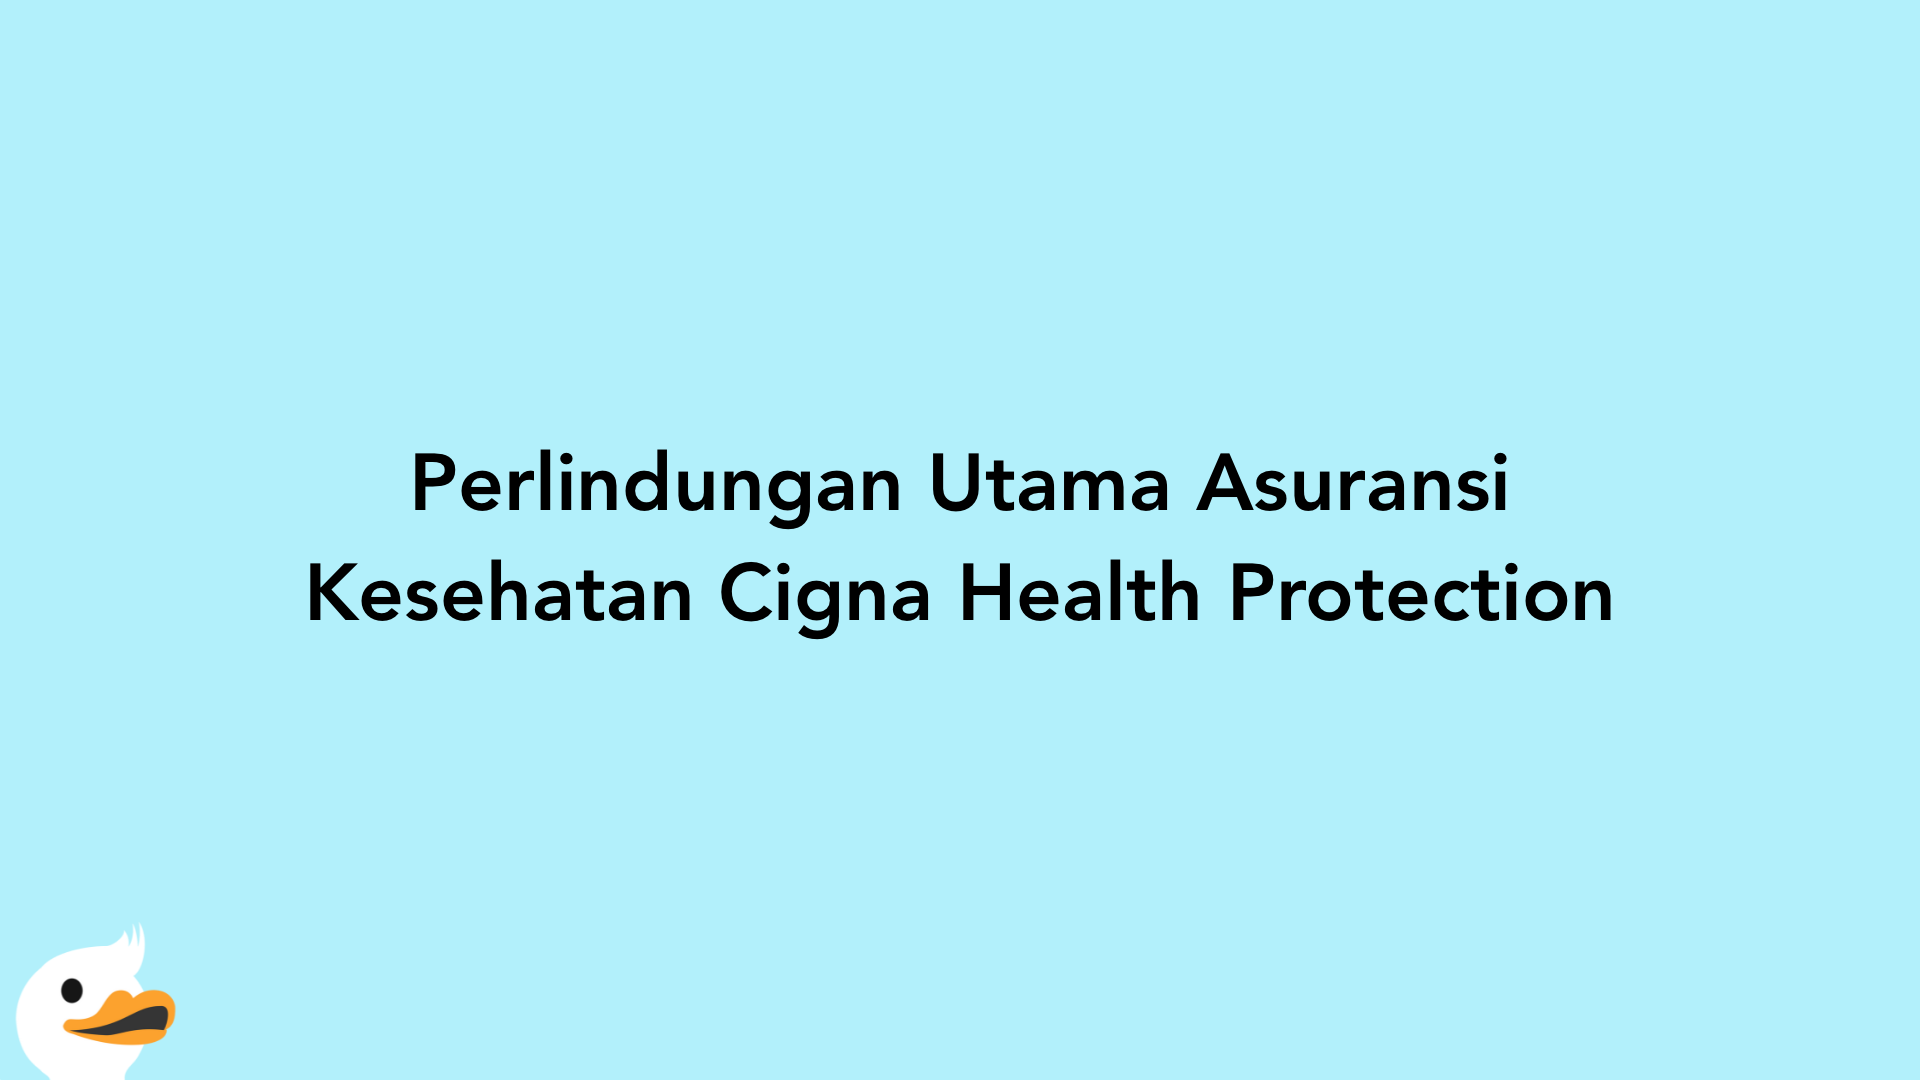 Perlindungan Utama Asuransi Kesehatan Cigna Health Protection